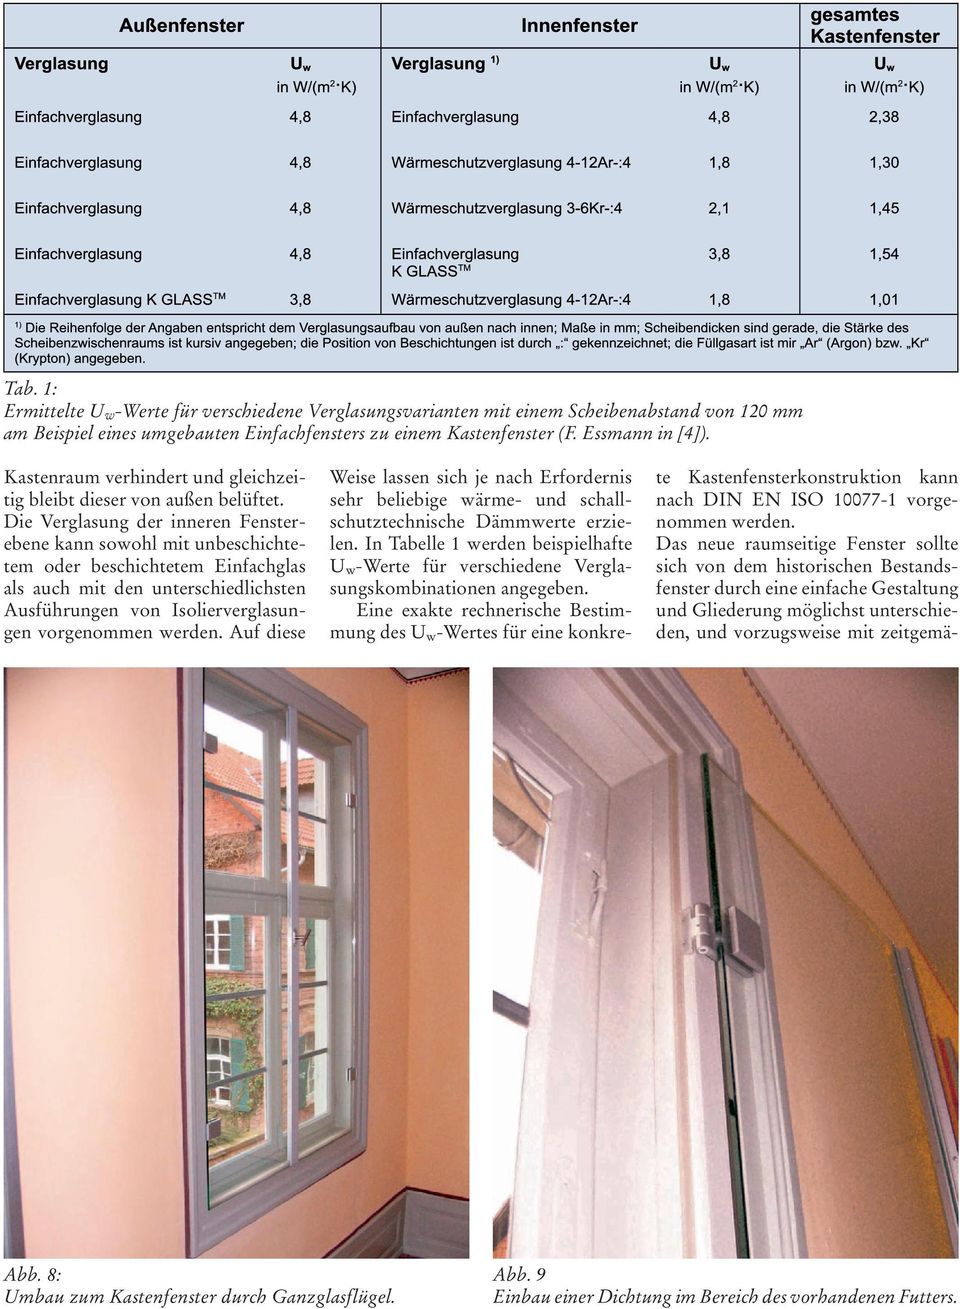 Die Verglasung der inneren Fensterebene kann sowohl mit unbeschichtetem oder beschichtetem Einfachglas als auch mit den unterschiedlichsten Ausführungen von Isolierverglasungen vorgenommen werden.